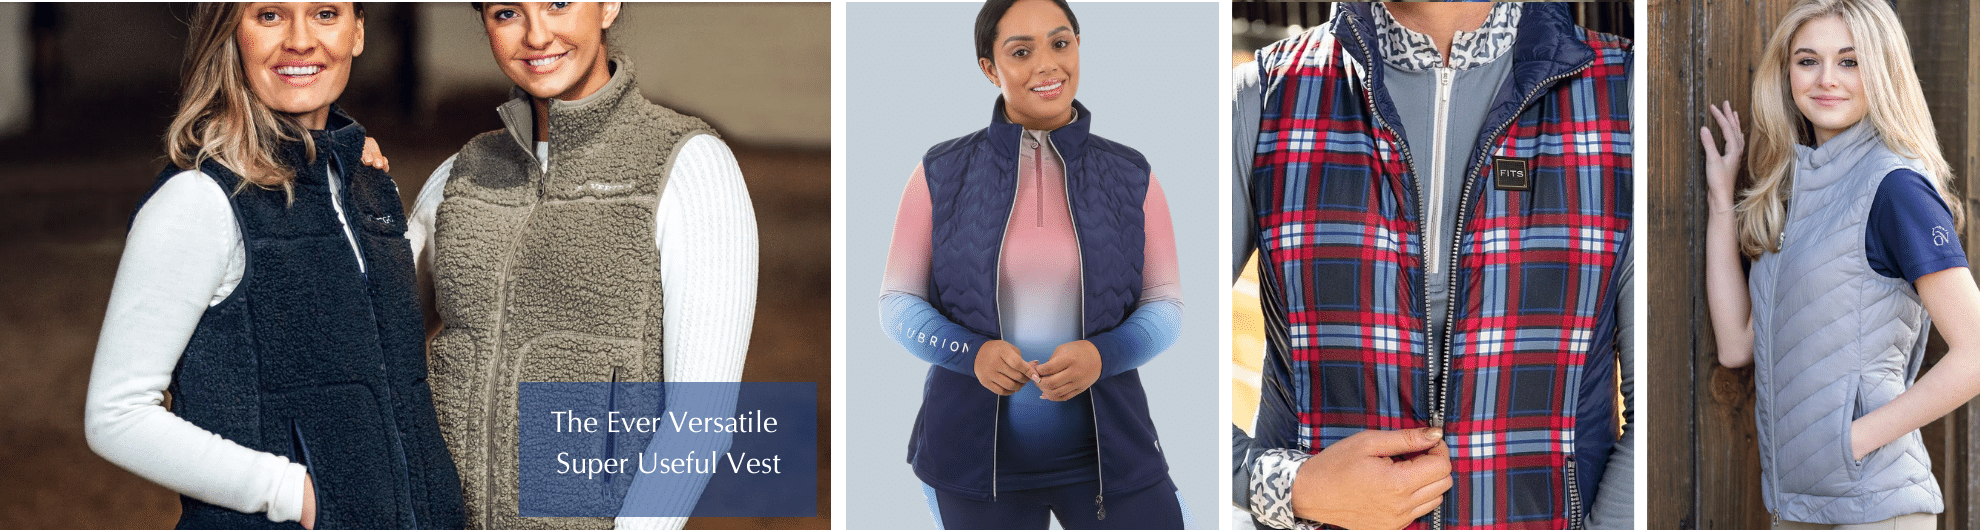 Versatile Vests